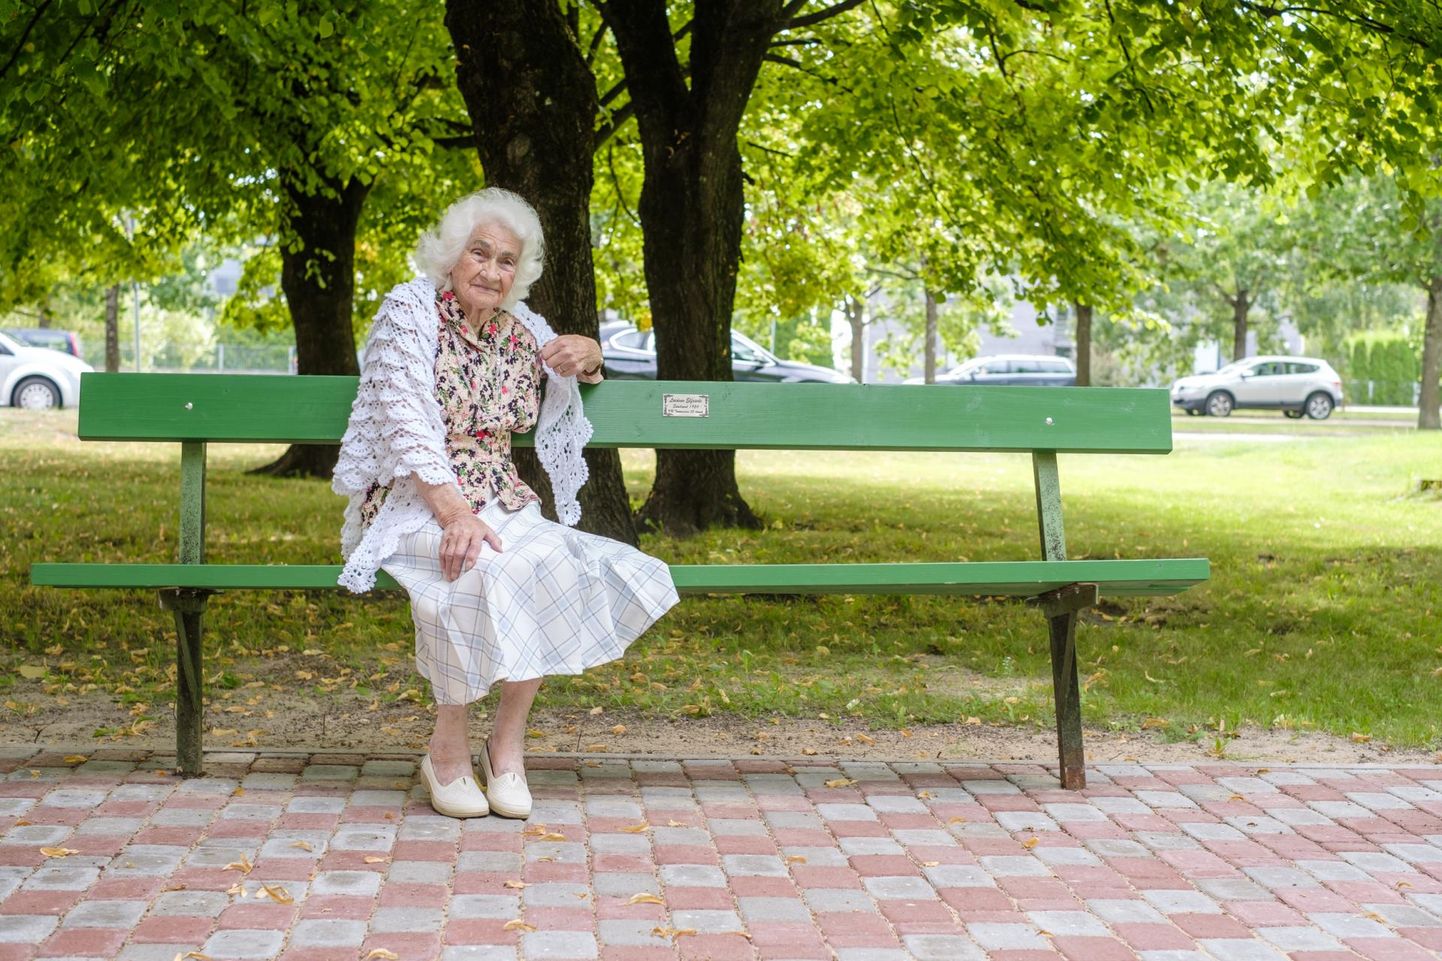 Pärnu Tammsaare 38 korteriühistu kinkis erakordsele elanikule Elfriede Laidveele pitsilise õlarätiku ja nimelise pingi ning sellel istudes on 100aastane juubilar majaesises puhkenurgas rõõmsalt elevil.